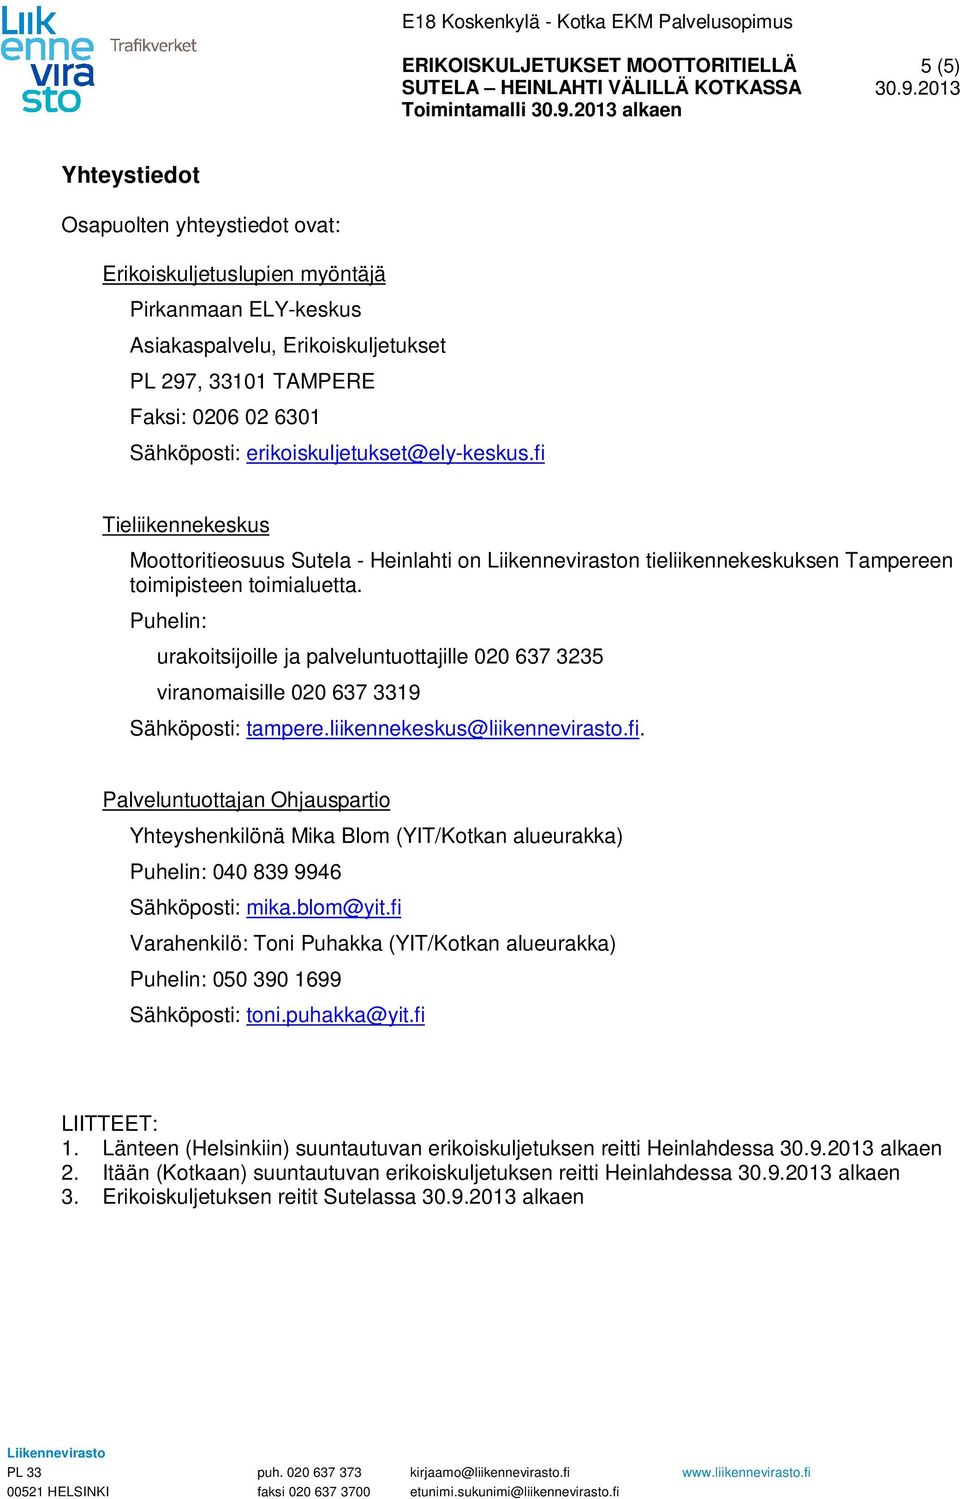 Puhelin: urakoitsijoille ja palveluntuottajille 020 637 3235 viranomaisille 020 637 3319 Sähköposti: tampere.liikennekeskus@liikennevirasto.fi.